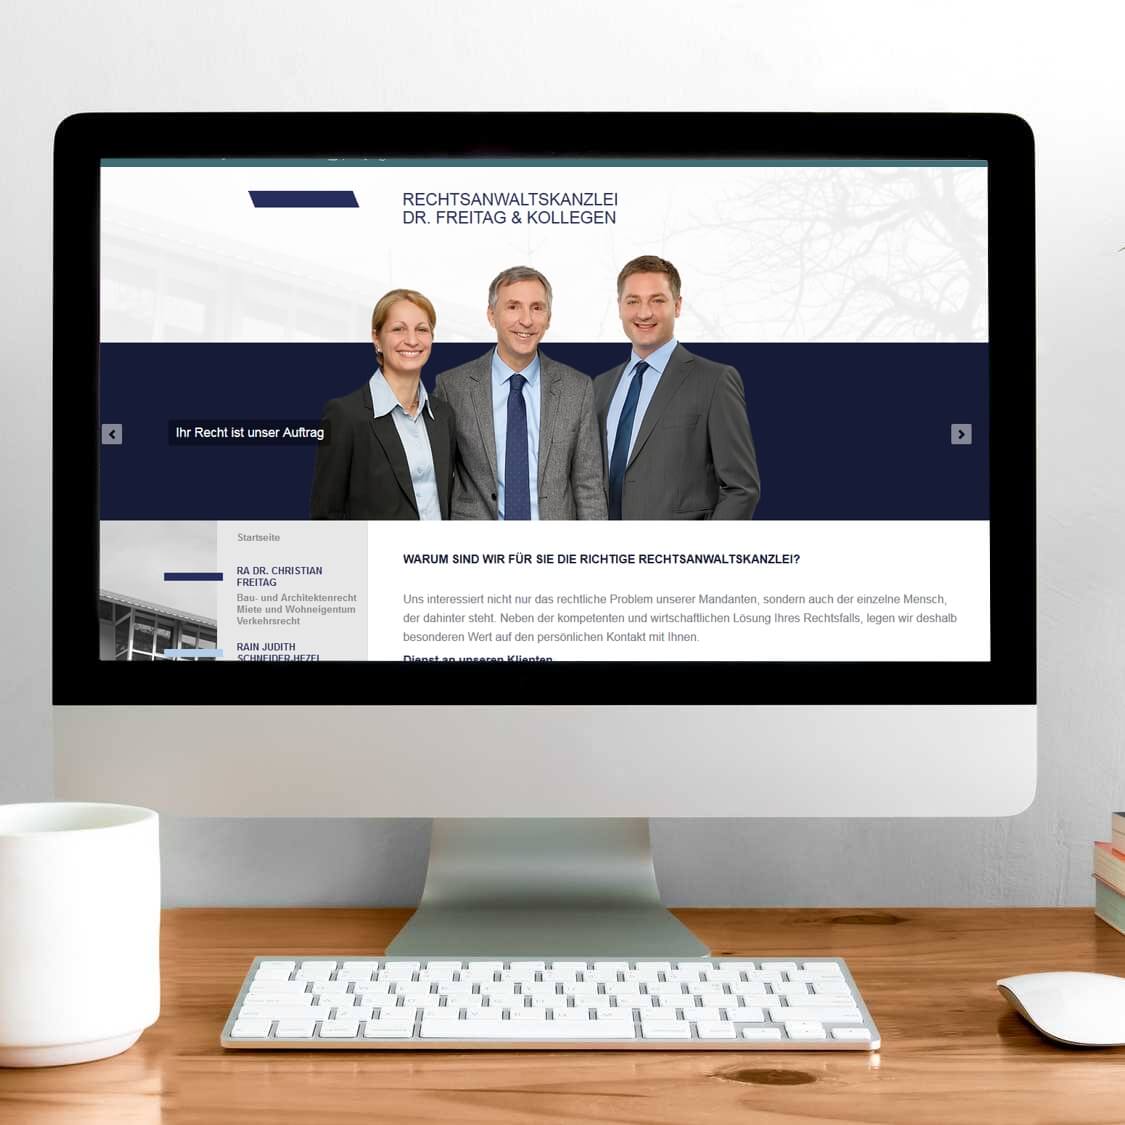 Abbildung der Contao Webseite für Rechtsanwaltskanzlei Dr. Freitag Ludwigsburg